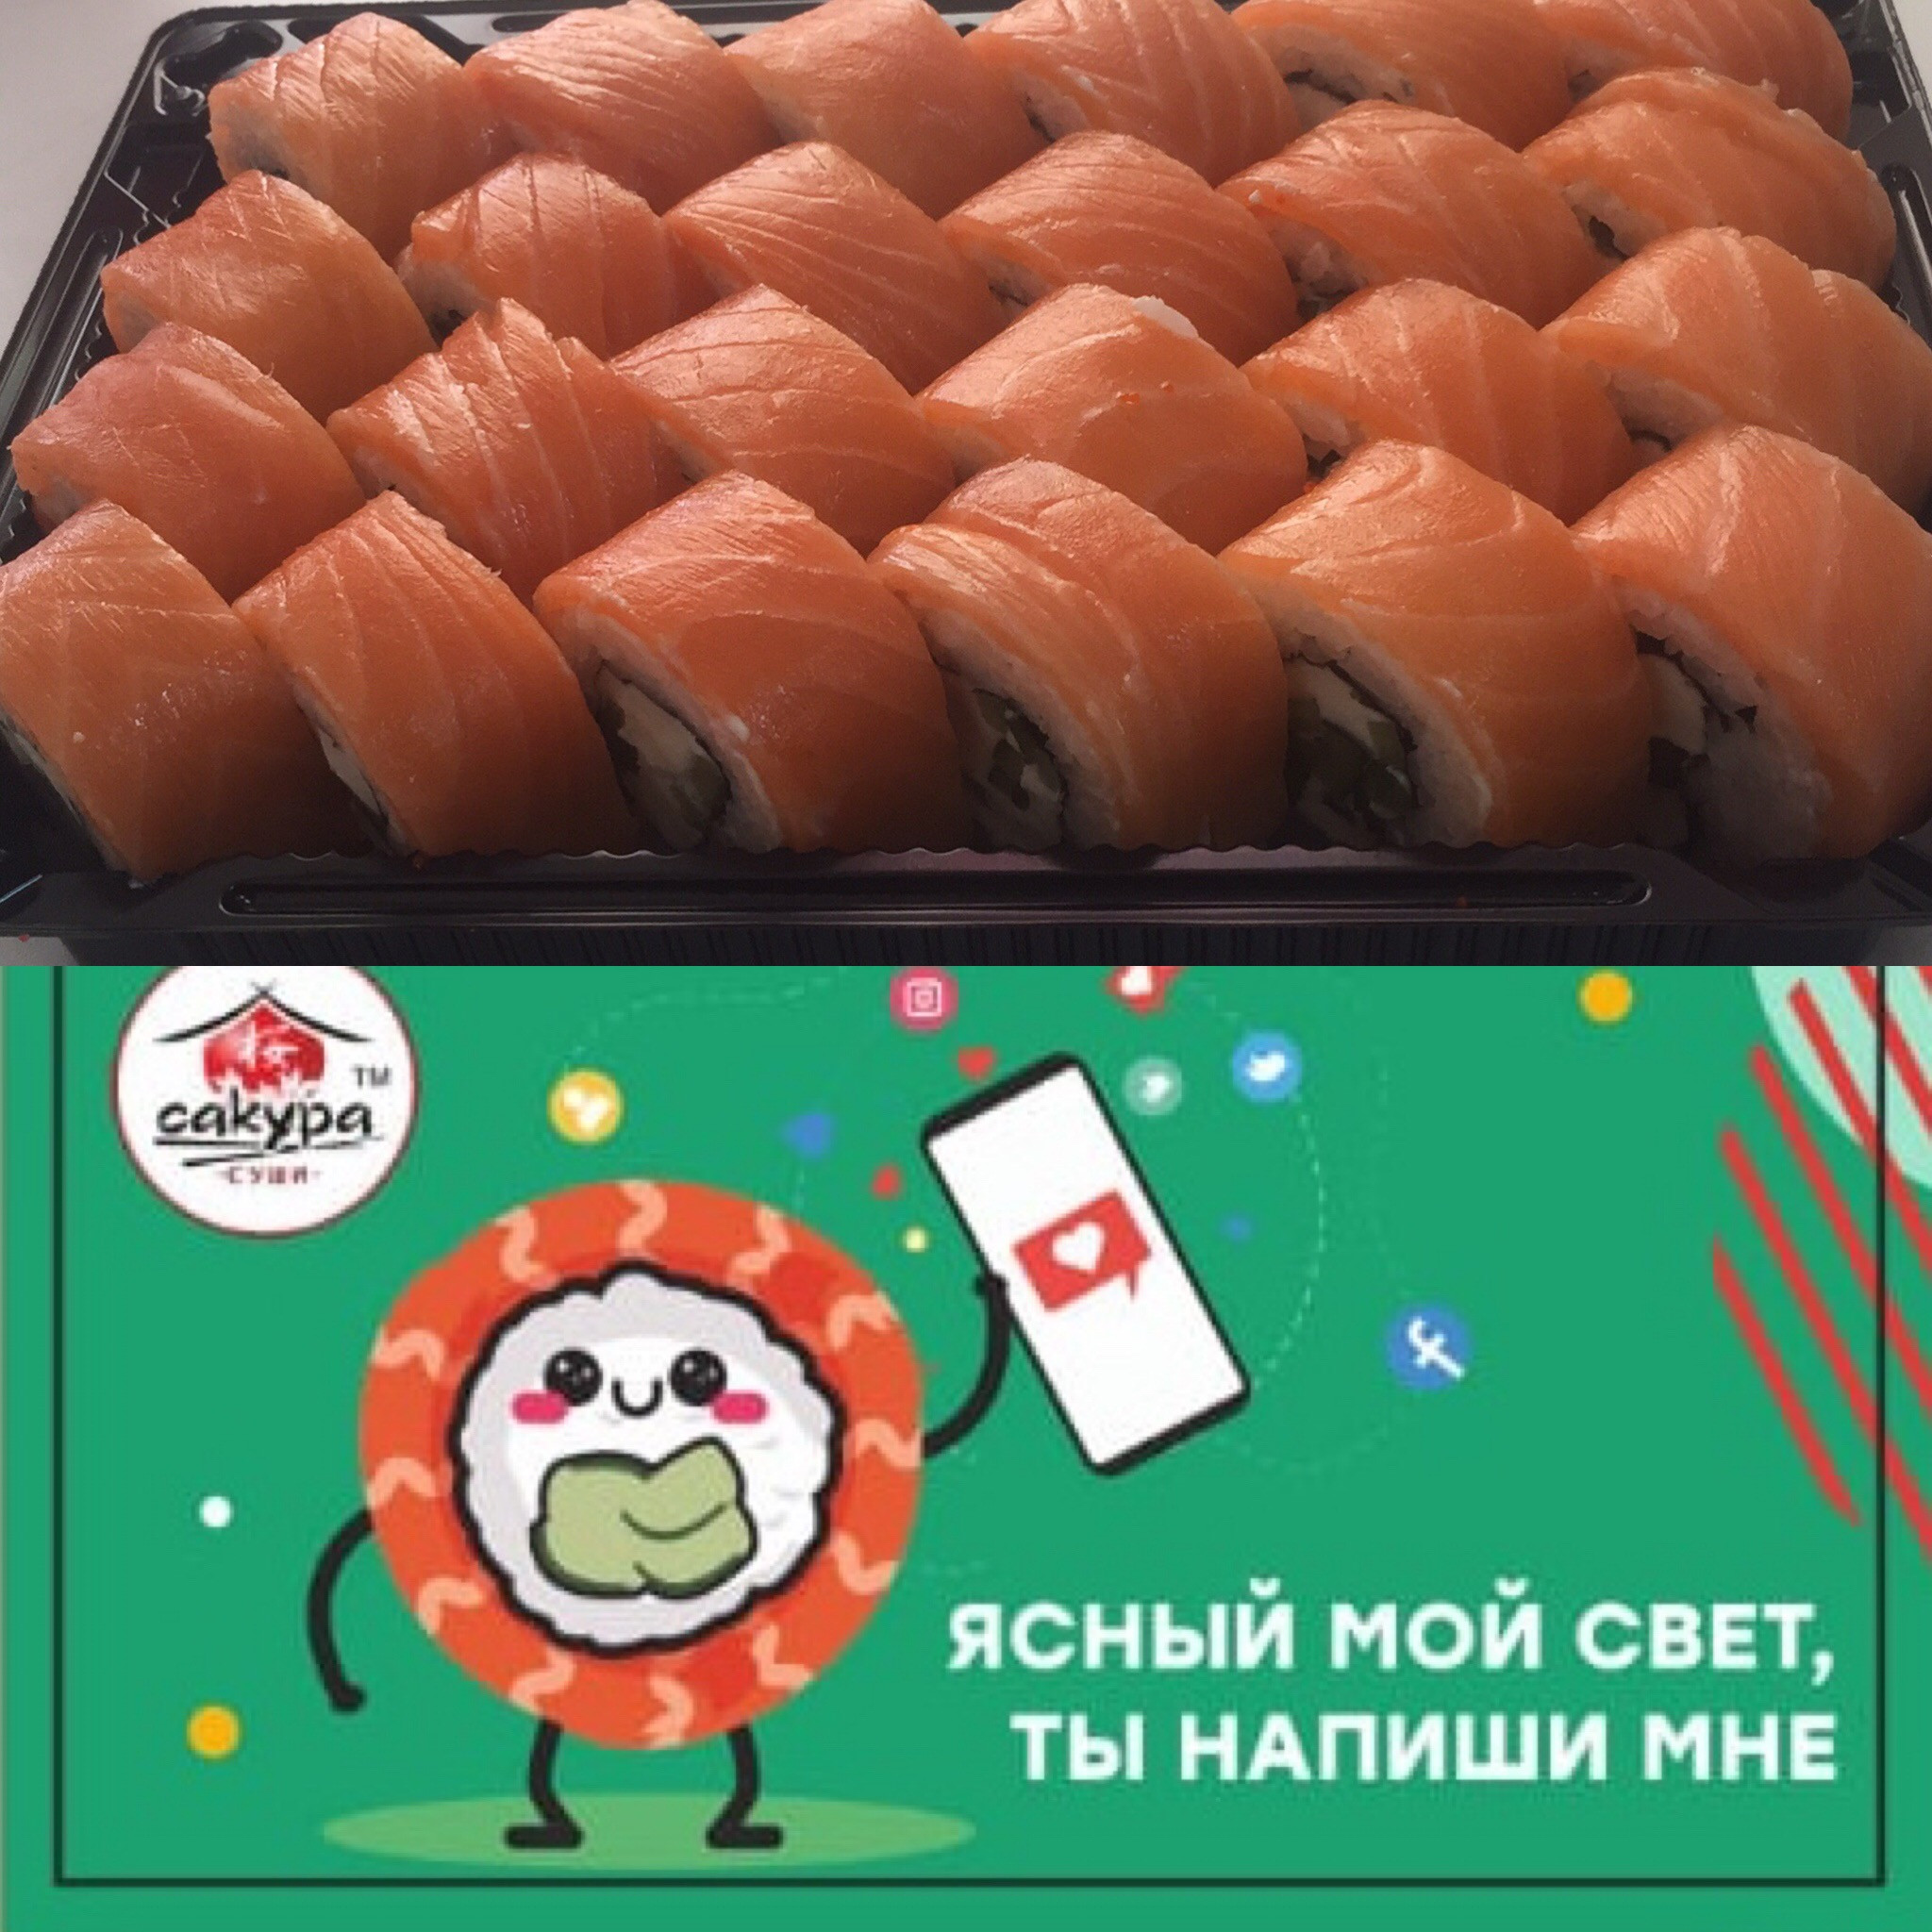 Отзывы о сакура суши новосибирск фото 28